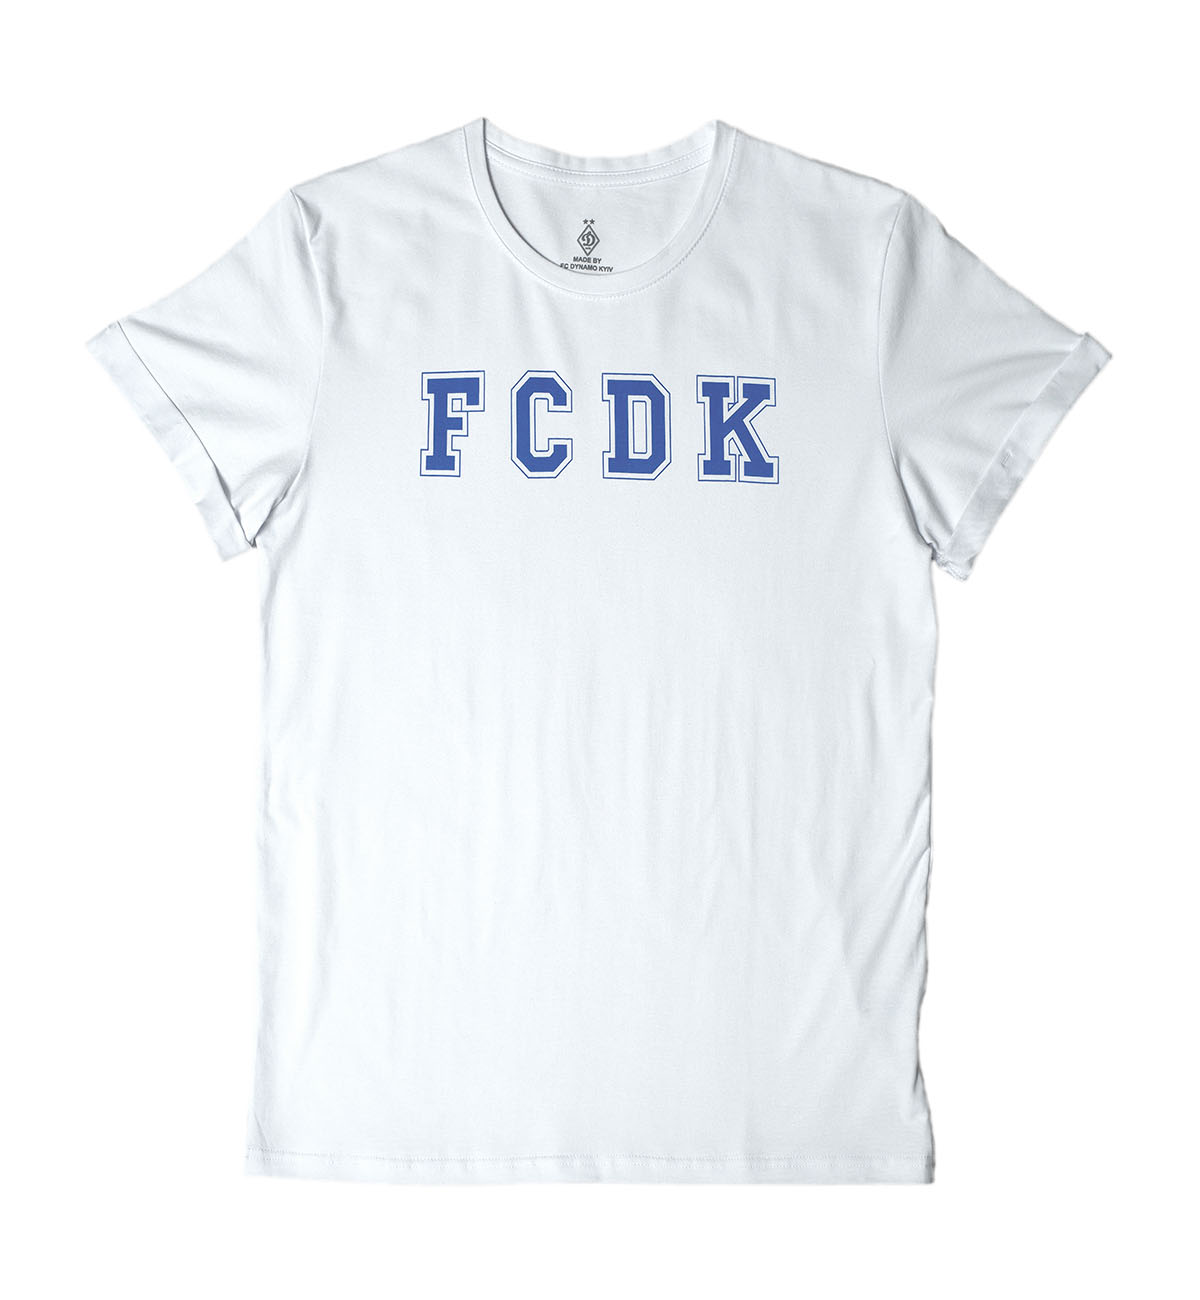 Футболка "FCDK", біла